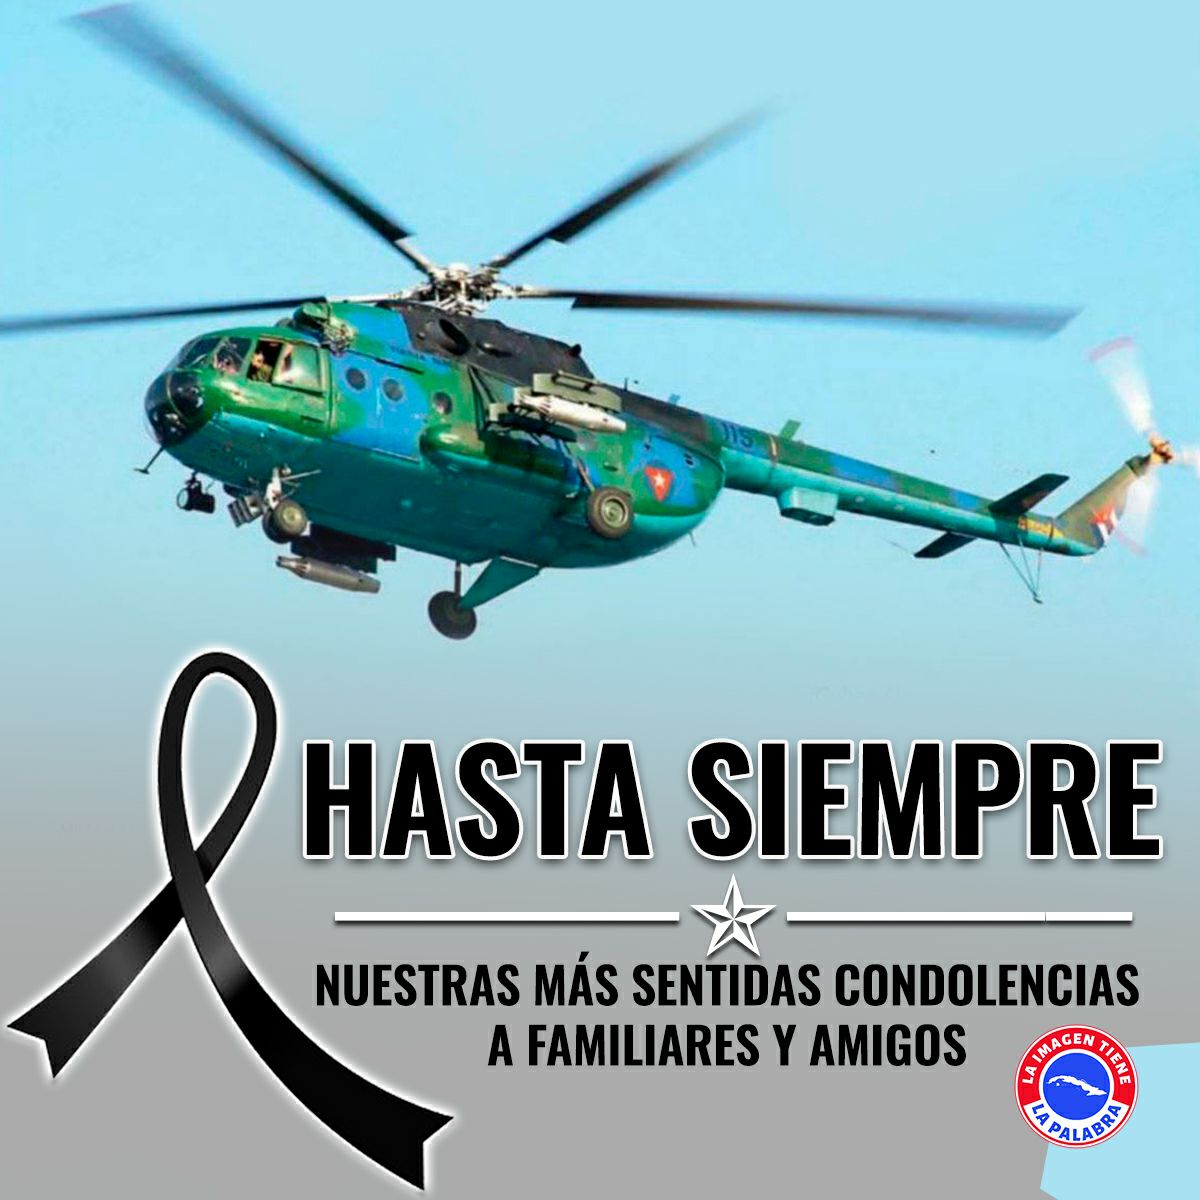 CDI Hugo Chavez Frías 
Estado de portuguesa 
Municipio de papelón 
Nuestras más sentidas condolencias 
#patriaeshumanidad 
#héroescubanos